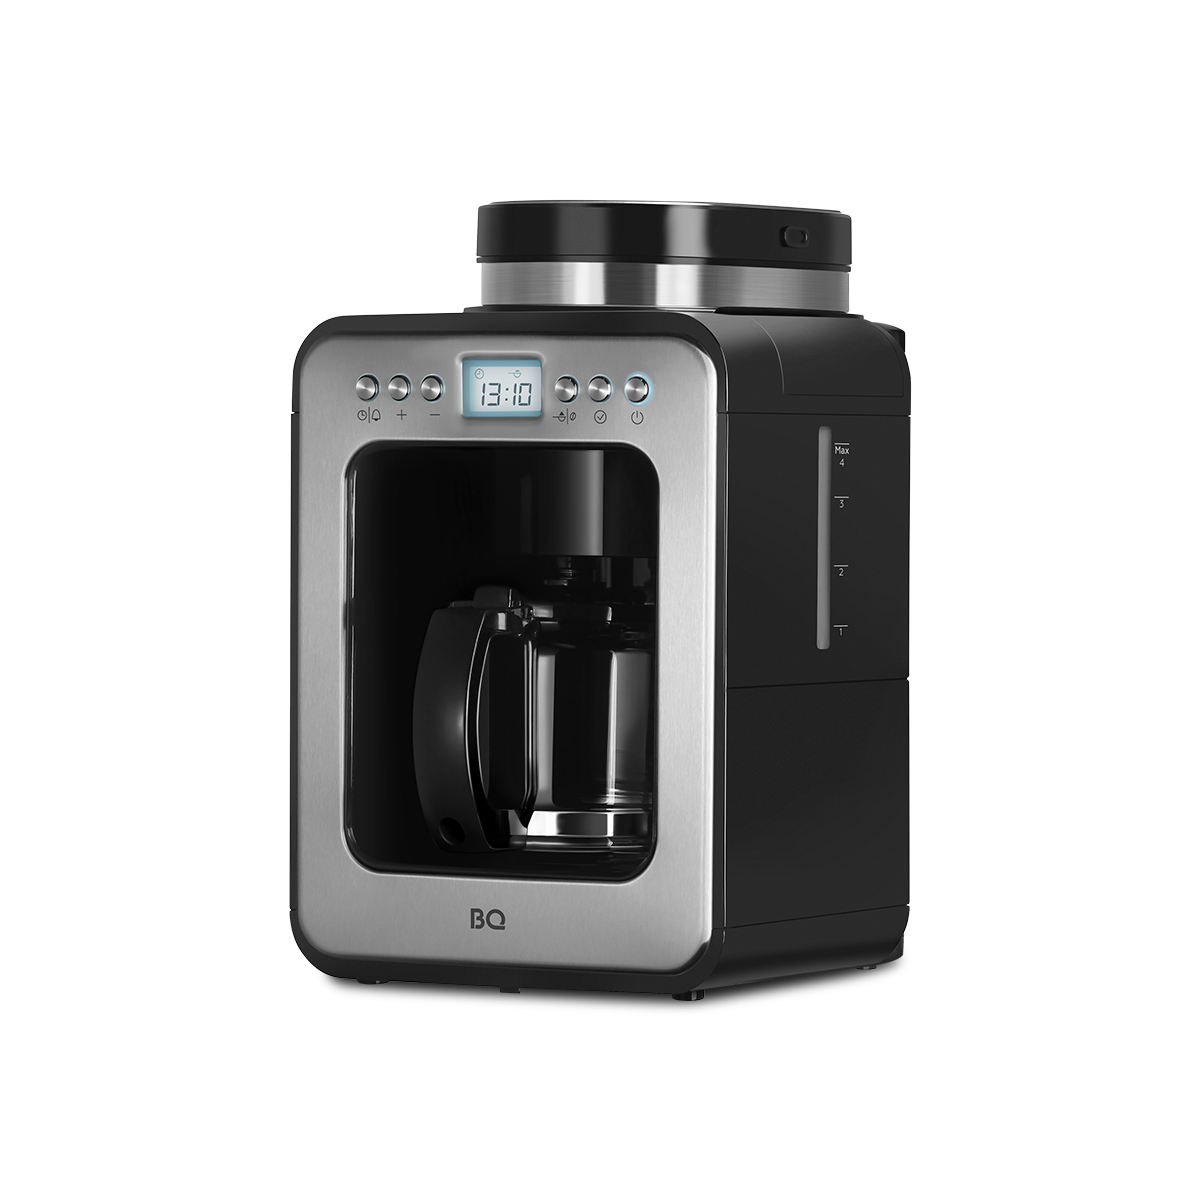 Кофеварка капельного типа BQ CM7001 серебристый, черный капельная кофеварка со встроенной кофемолкой bq cm7000